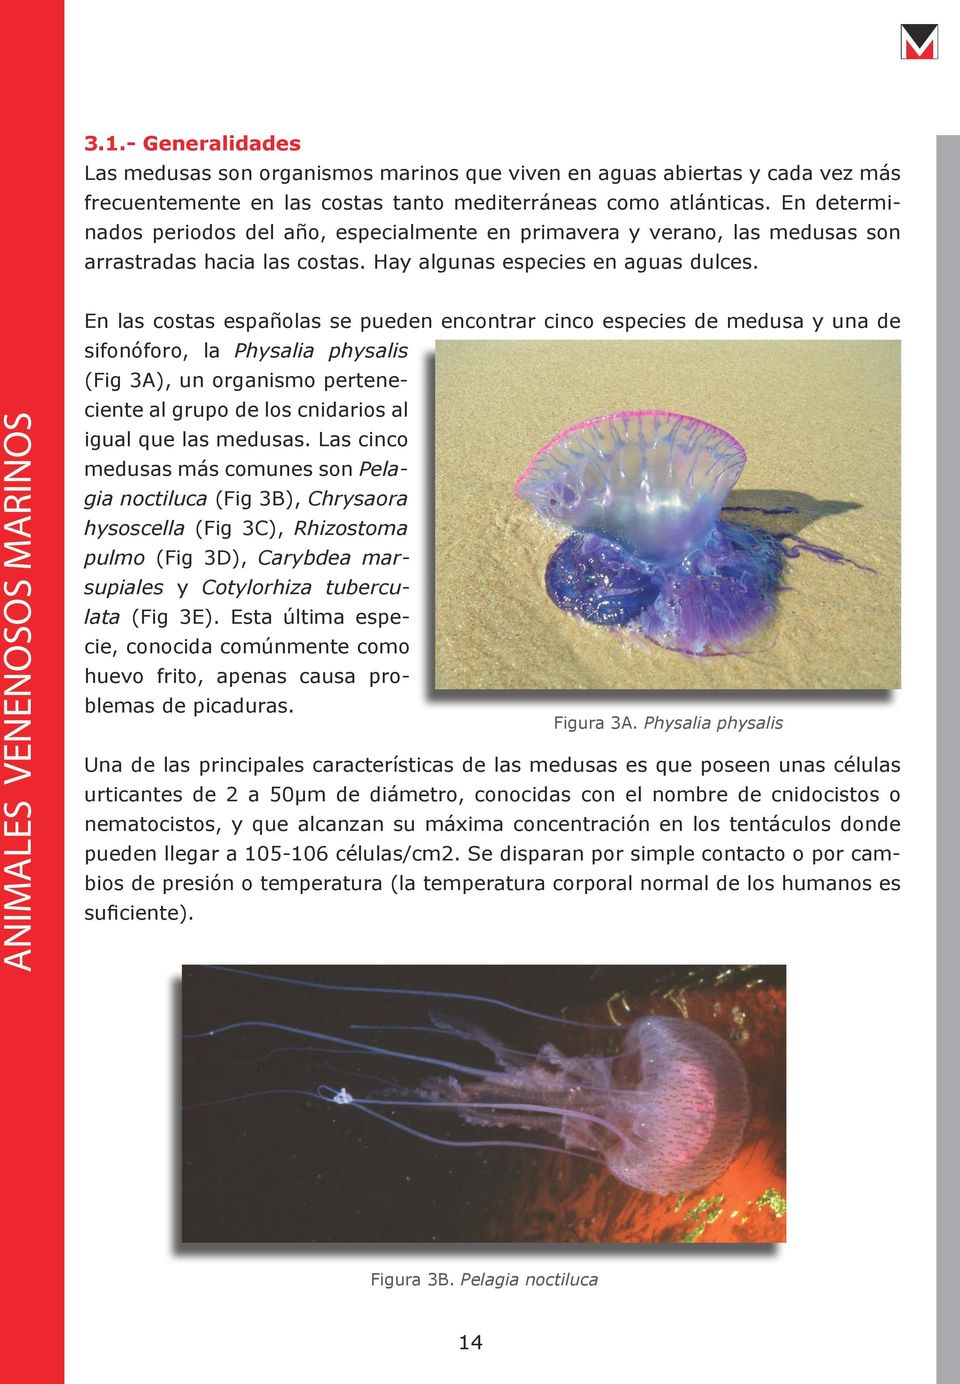 En las costas españolas se pueden encontrar cinco especies de medusa y una de sifonóforo, la Physalia physalis (Fig 3A), un organismo perteneciente al grupo de los cnidarios al igual que las medusas.